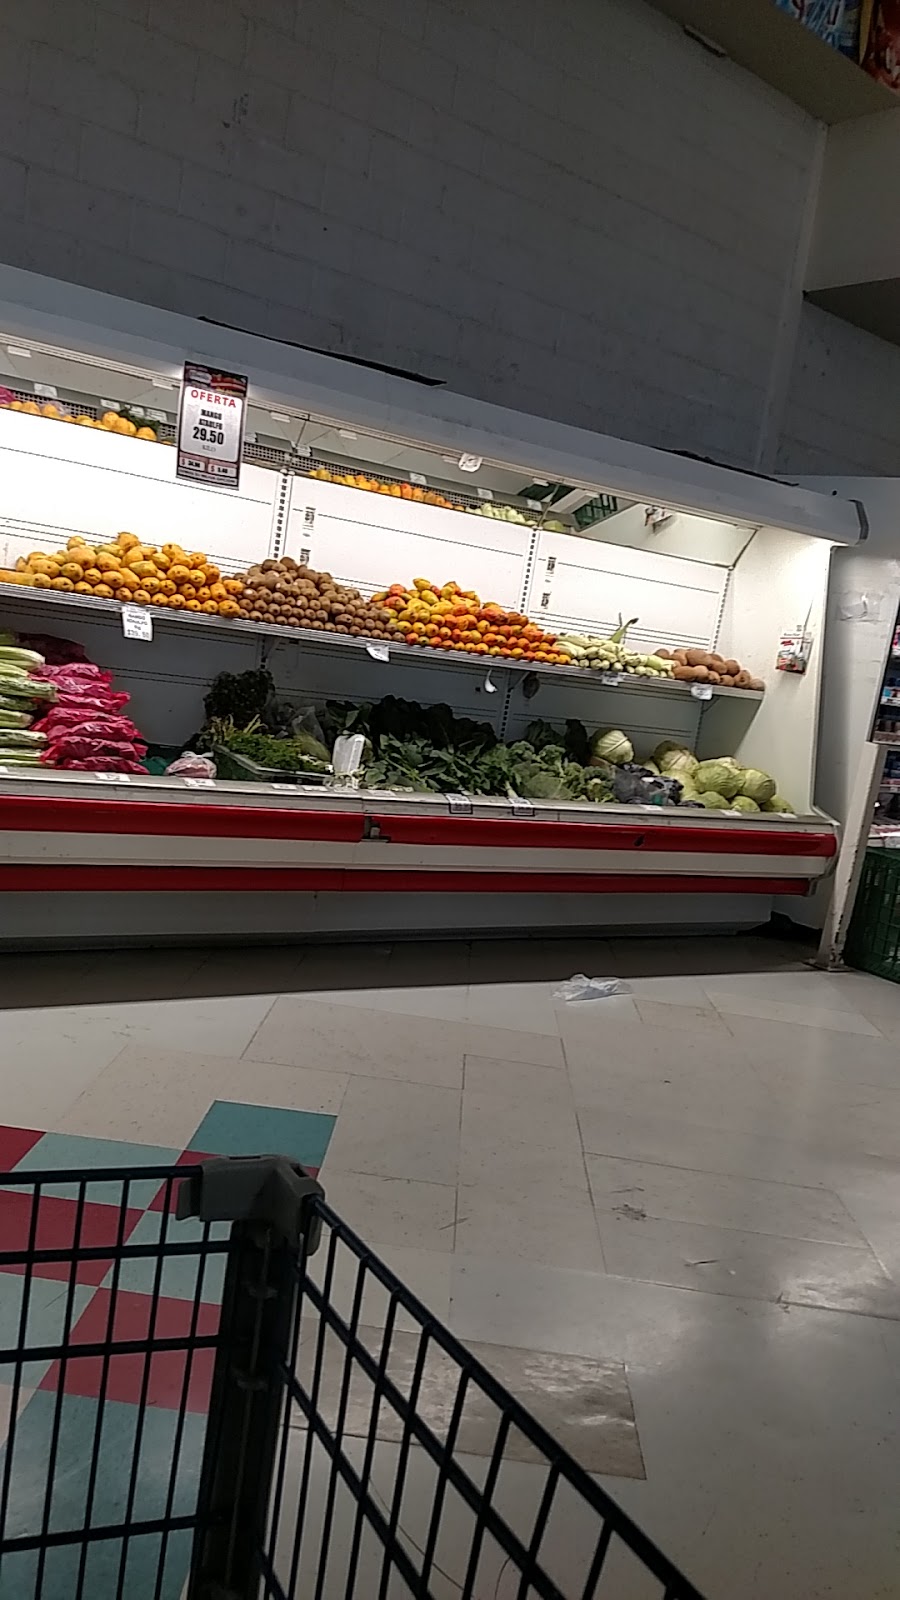 Supermercado González | Av, C. Santiago Blancas 380, Praderas del Sur, 32599 Cd Juárez, Chih., Mexico | Phone: 656 683 3337